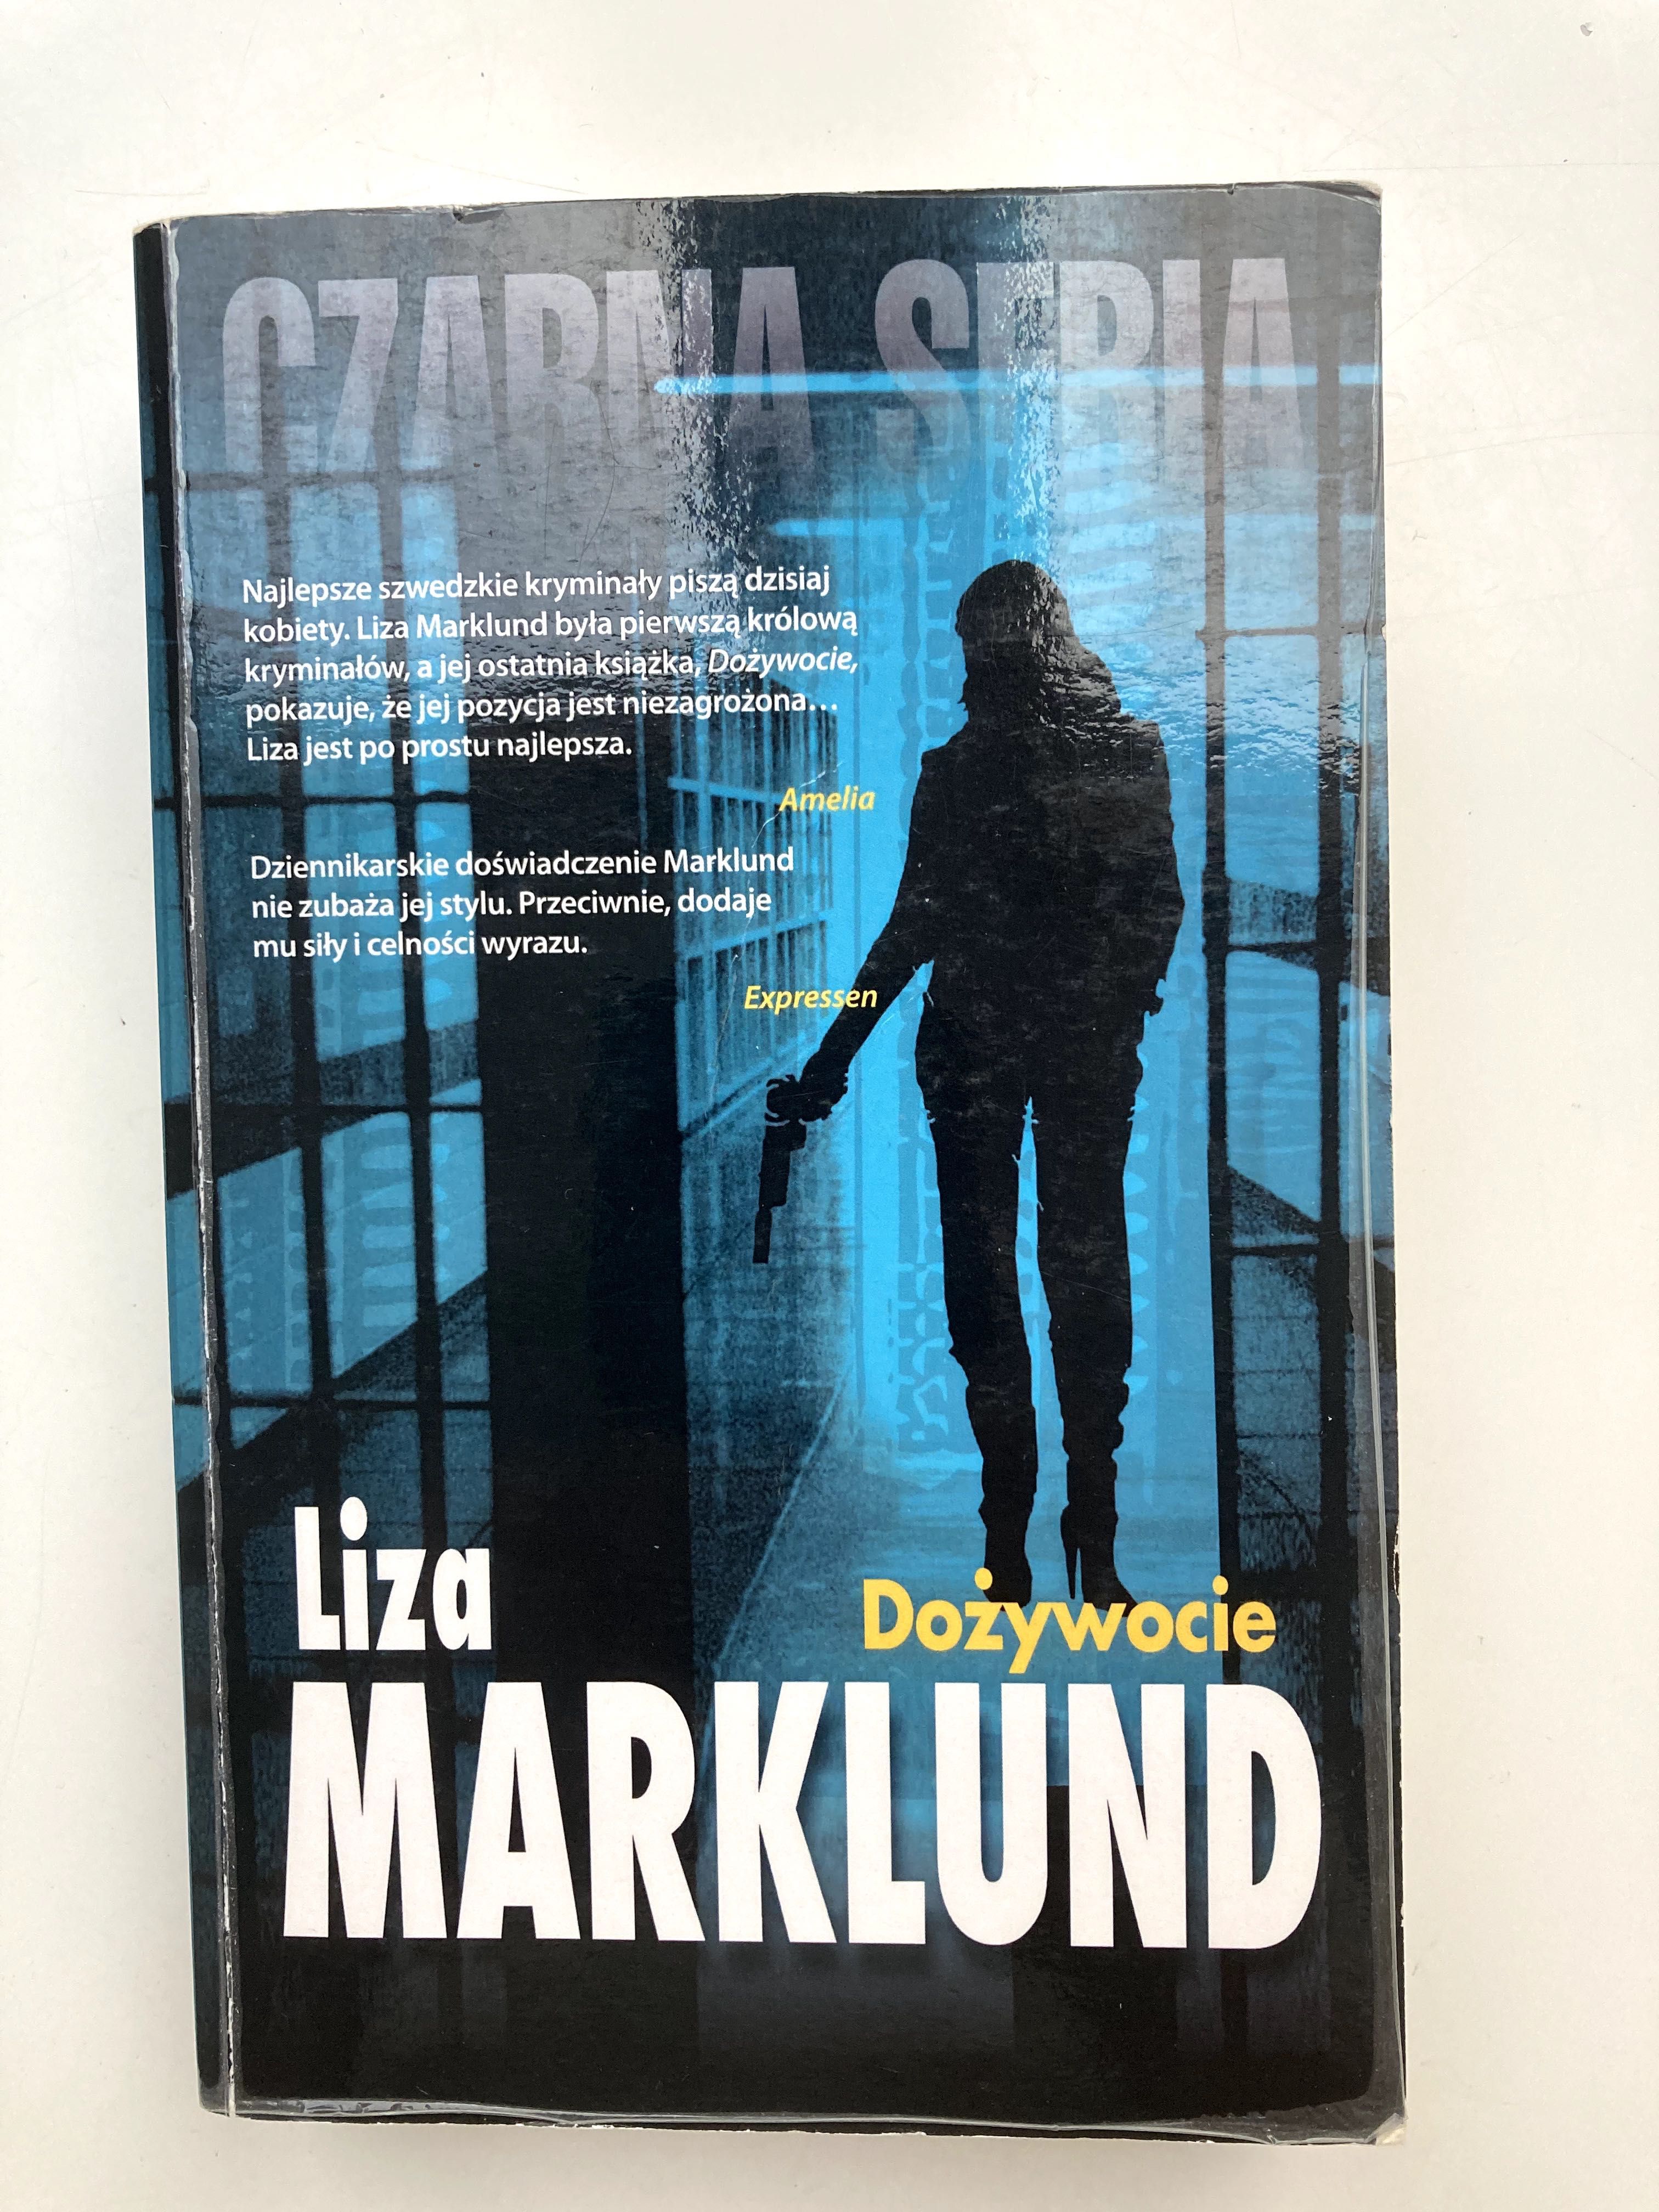 Liza Marklund "Dożywocie"